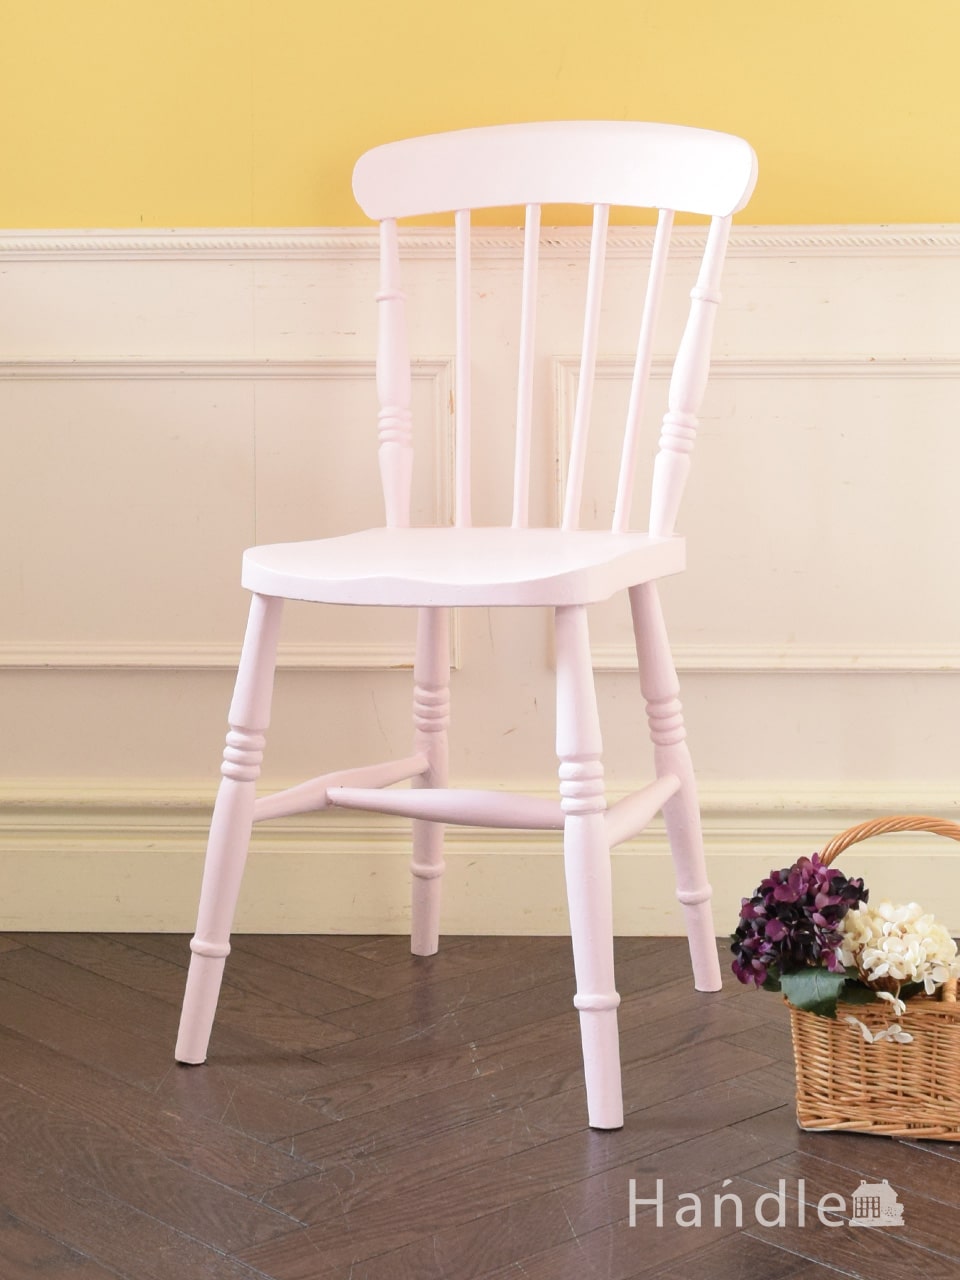 イギリスから届いたアンティークの椅子、ほんのりピンク色に色づいた可愛いキッチンチェア (d-990-c)